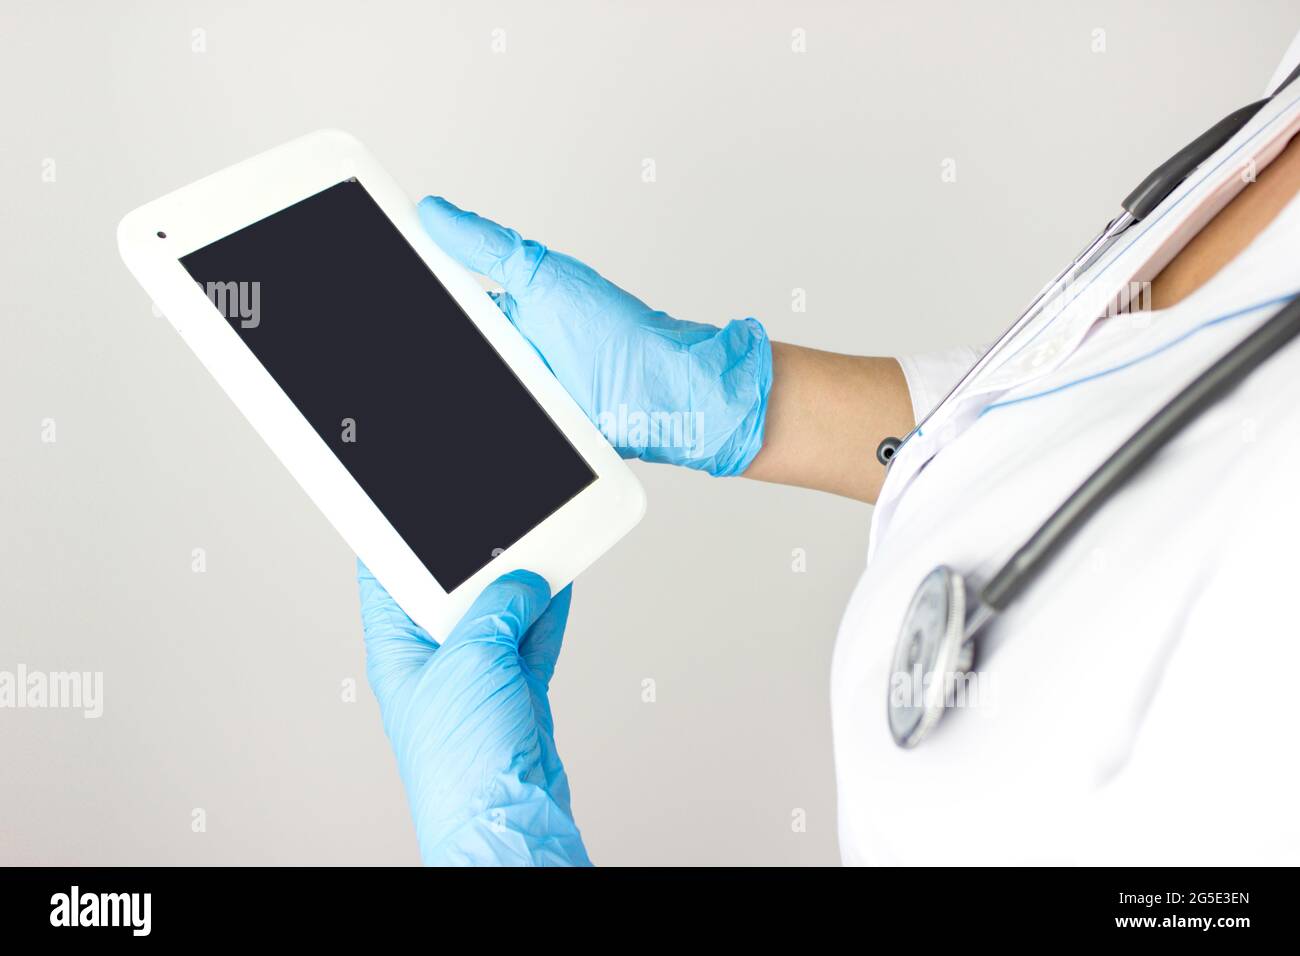 Medizintechnikkonzept. Arzt mit digitaler Tablette, moderne Technologie in der Medizin. Medizinische Software auf Tablet-PCs und Geräten im Gesundheitswesen Medizinische Netzw Stockfoto